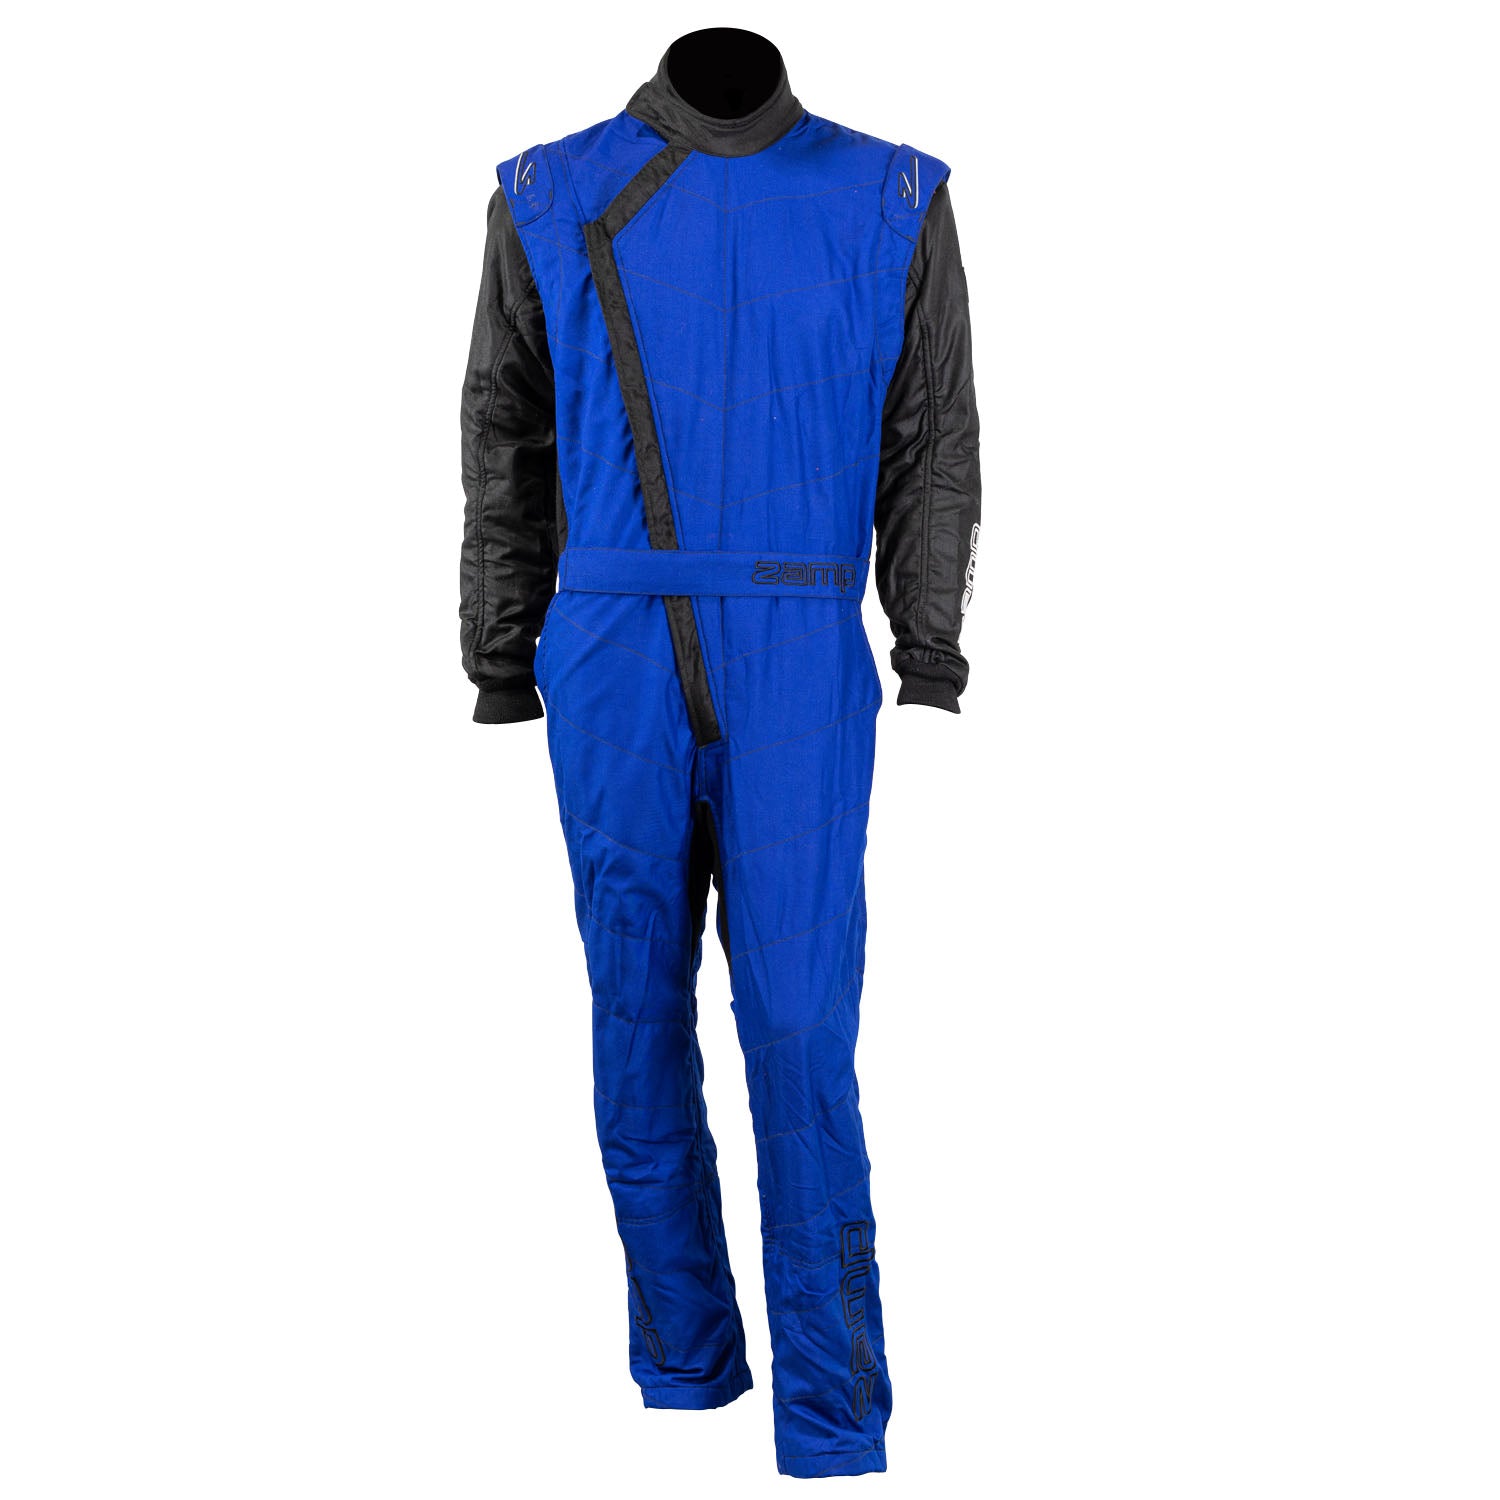 ZAMP Racing ZR-40 Race Suit Blue R07C042XL